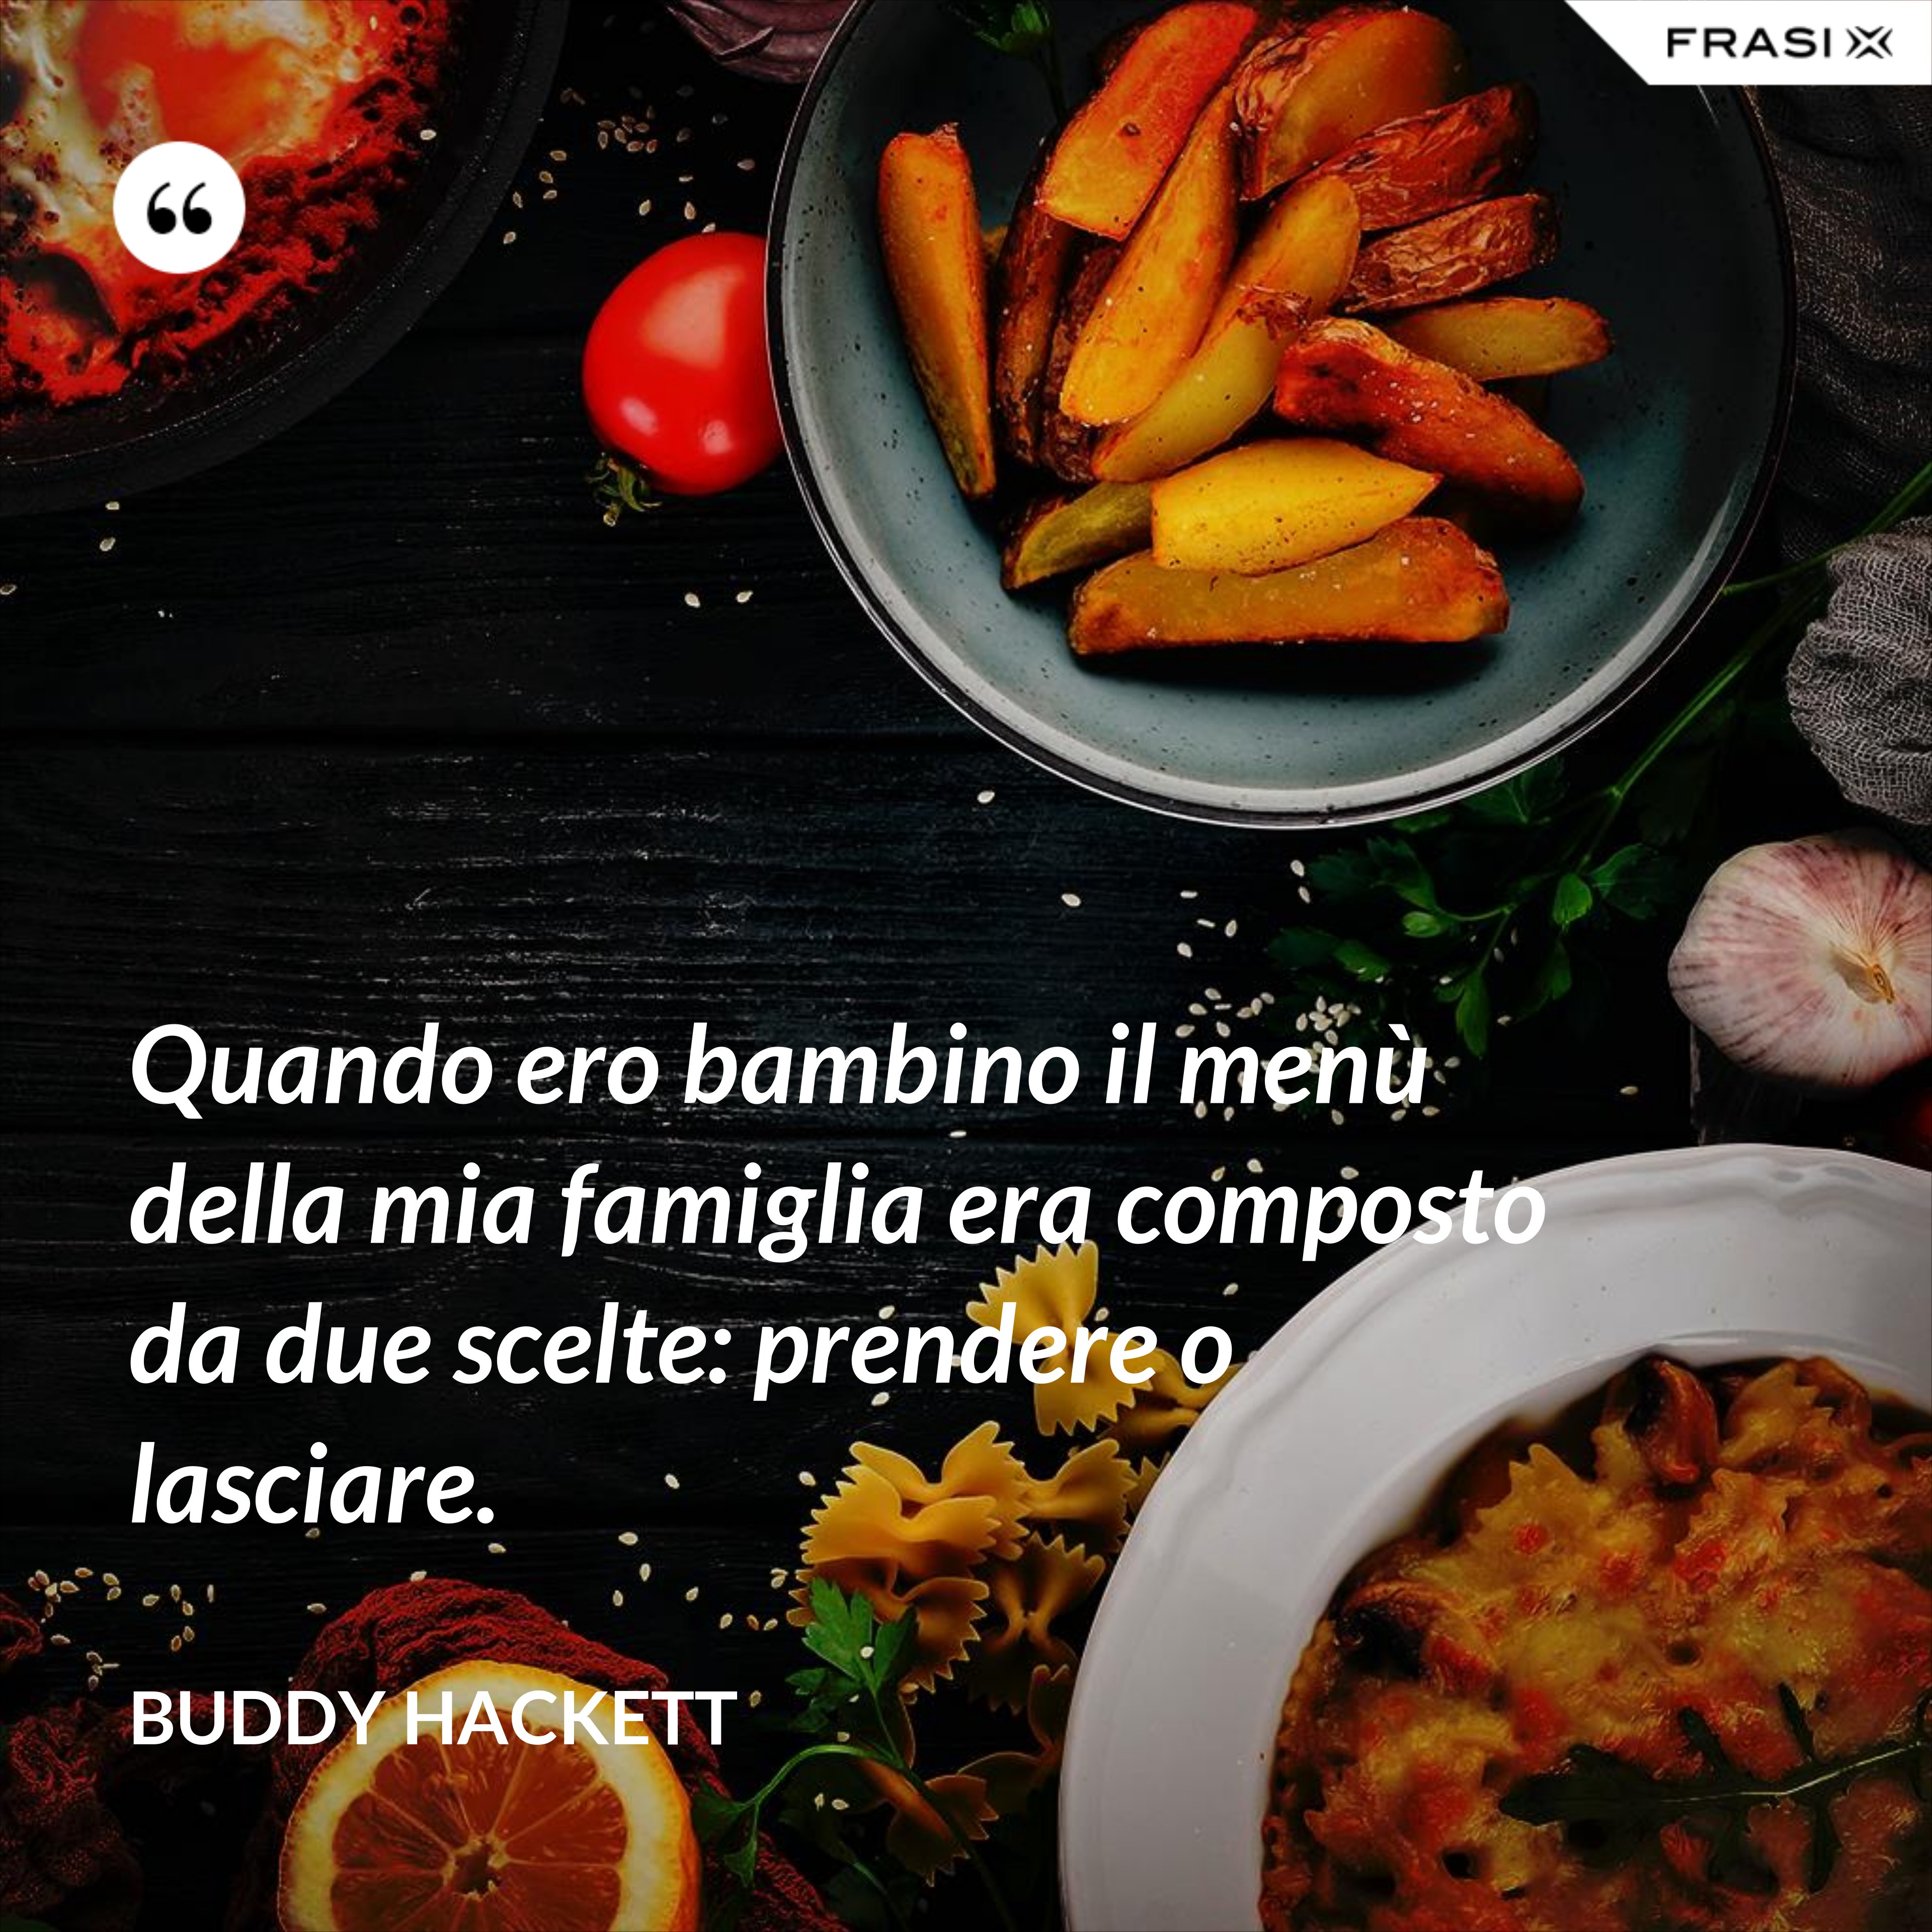 Quando ero bambino il menù della mia famiglia era composto da due scelte: prendere o lasciare. - Buddy Hackett